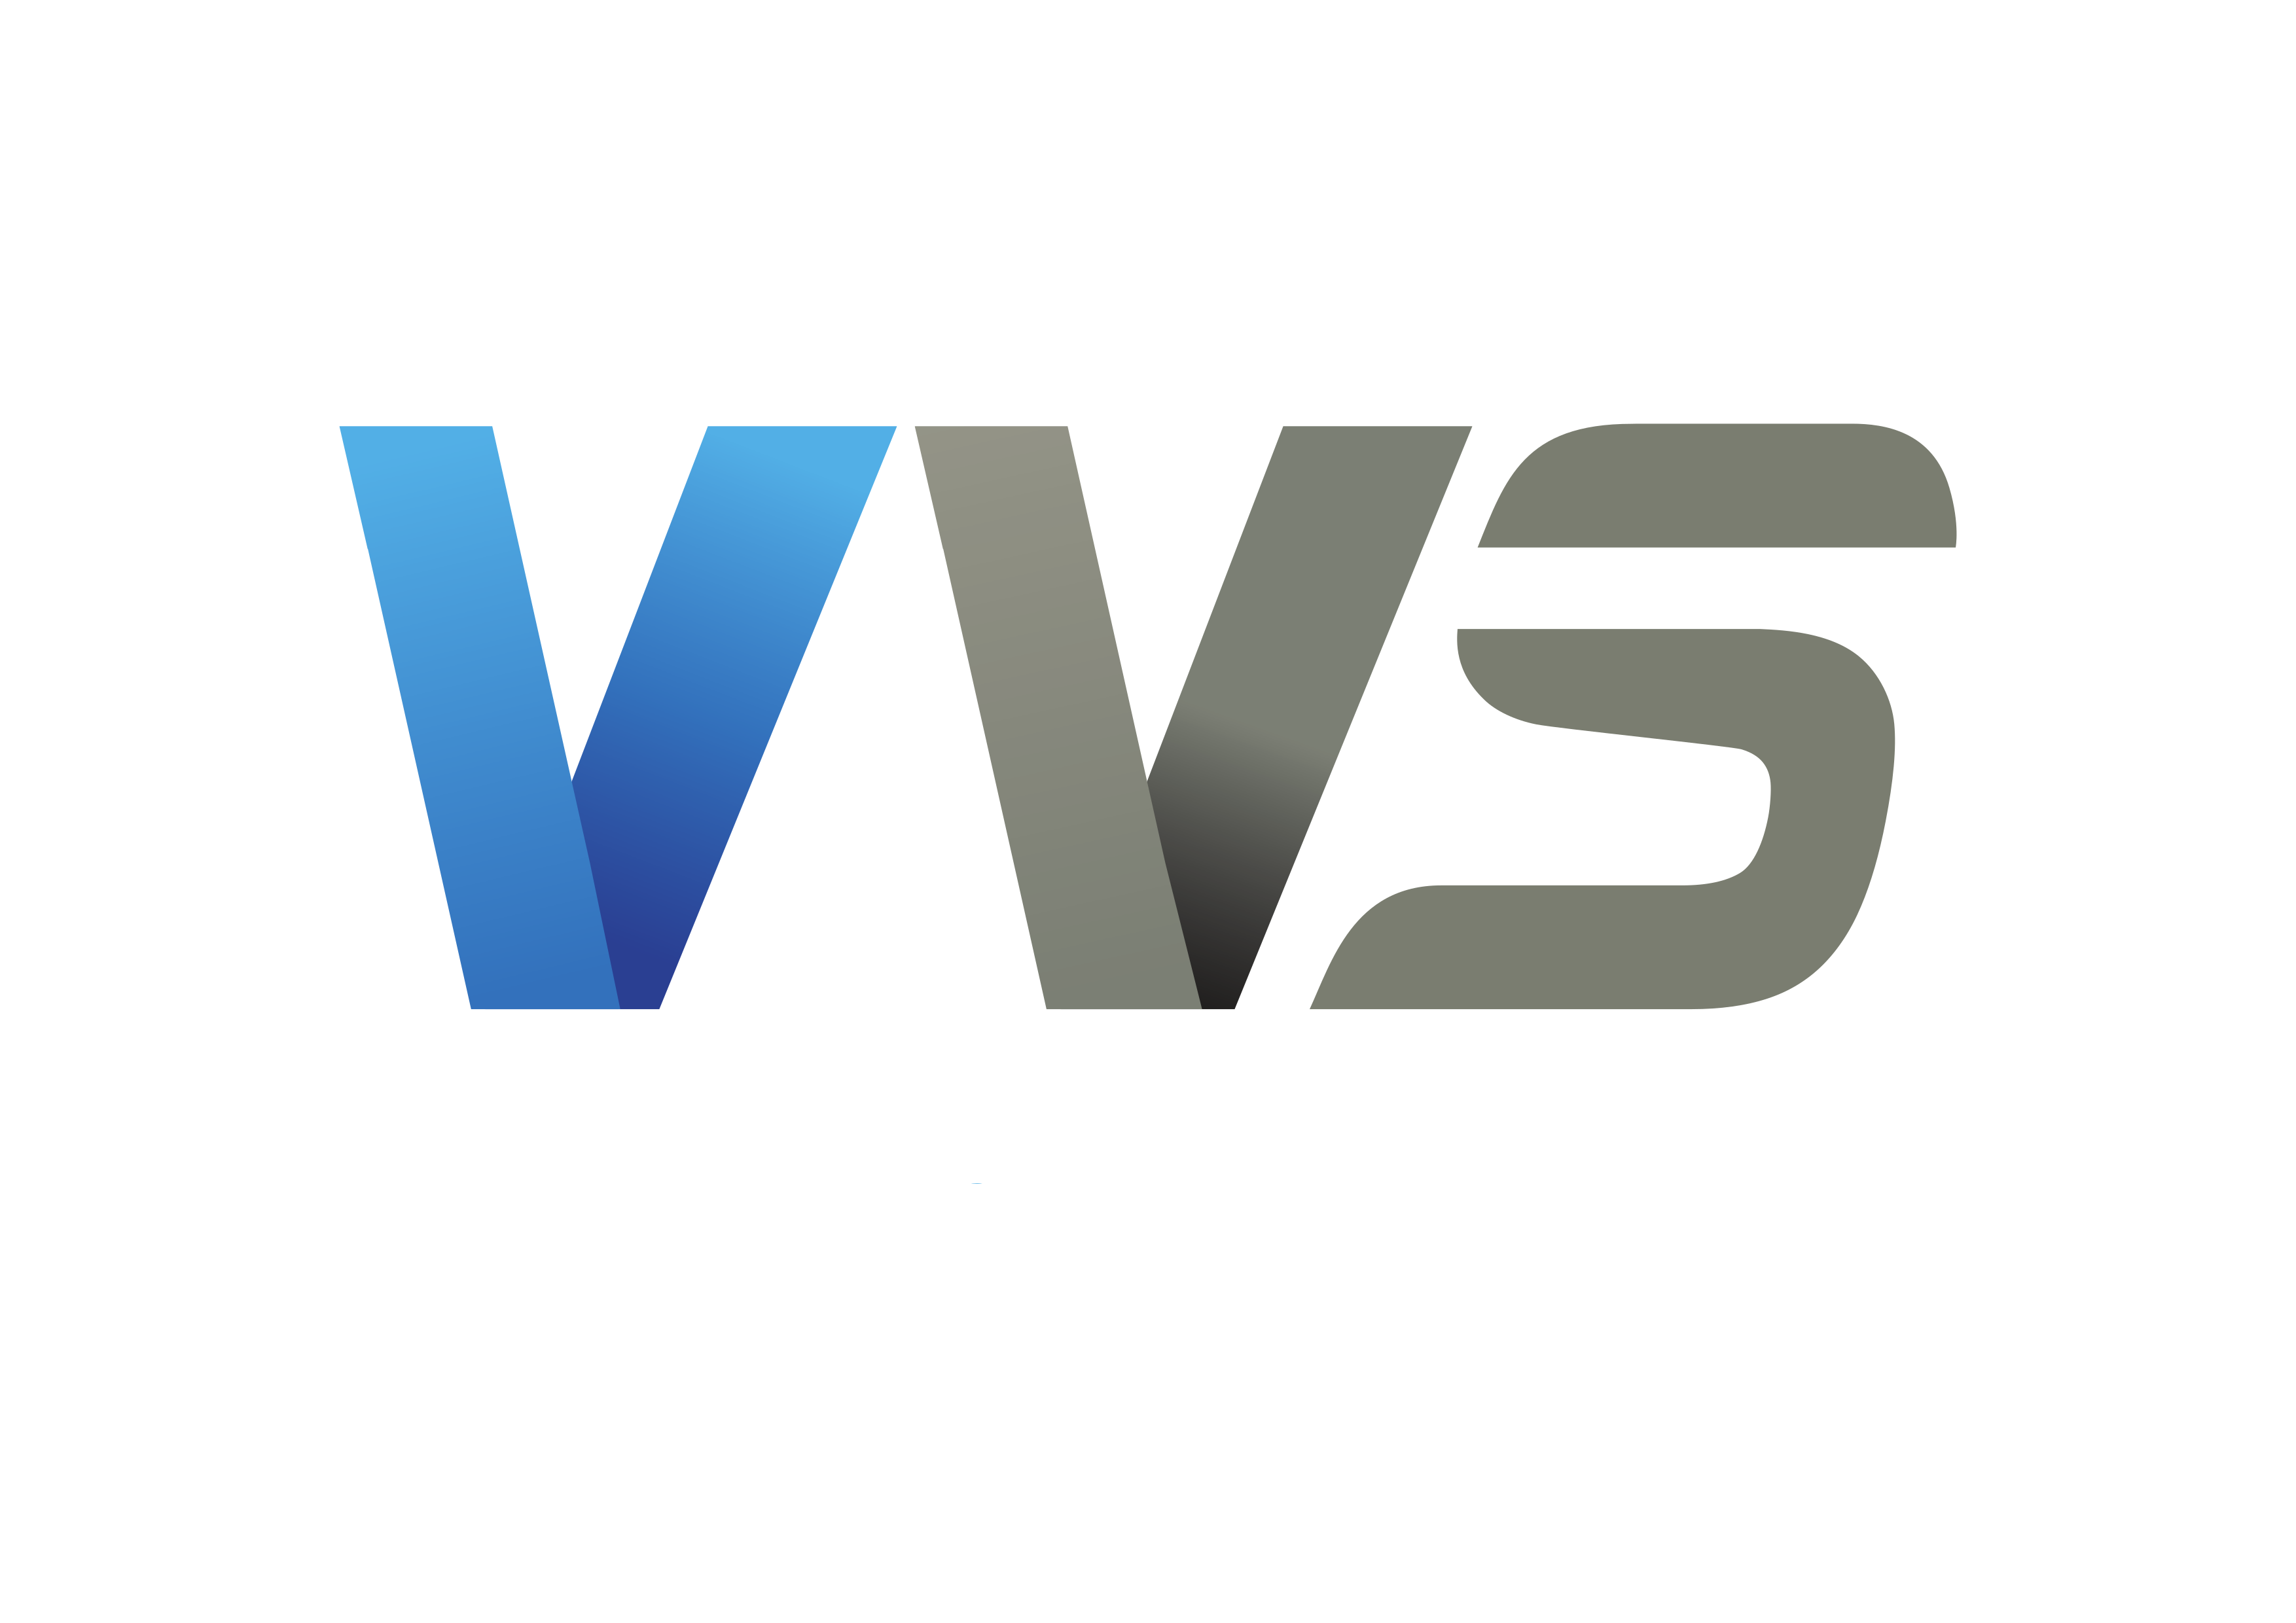 VVS Tech